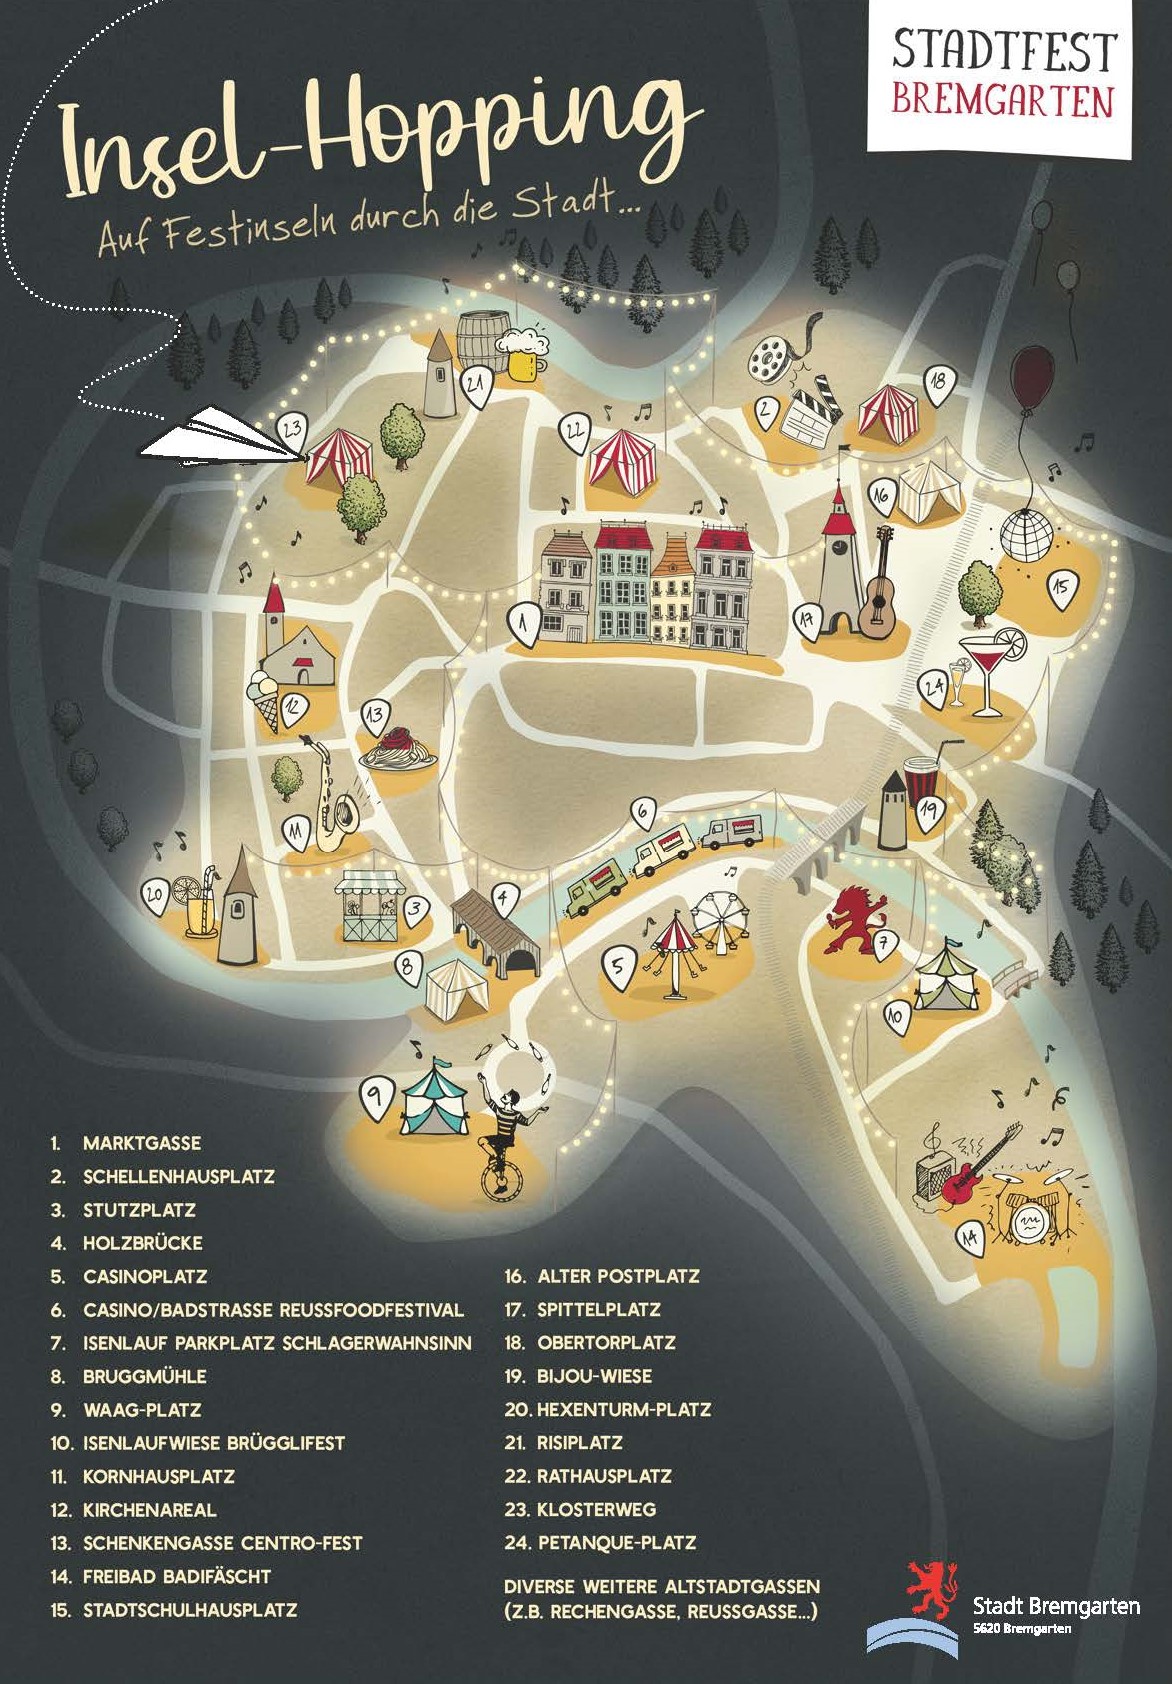 Gezeichneter Plan von Bremgarten mit verschiedenen Festinseln